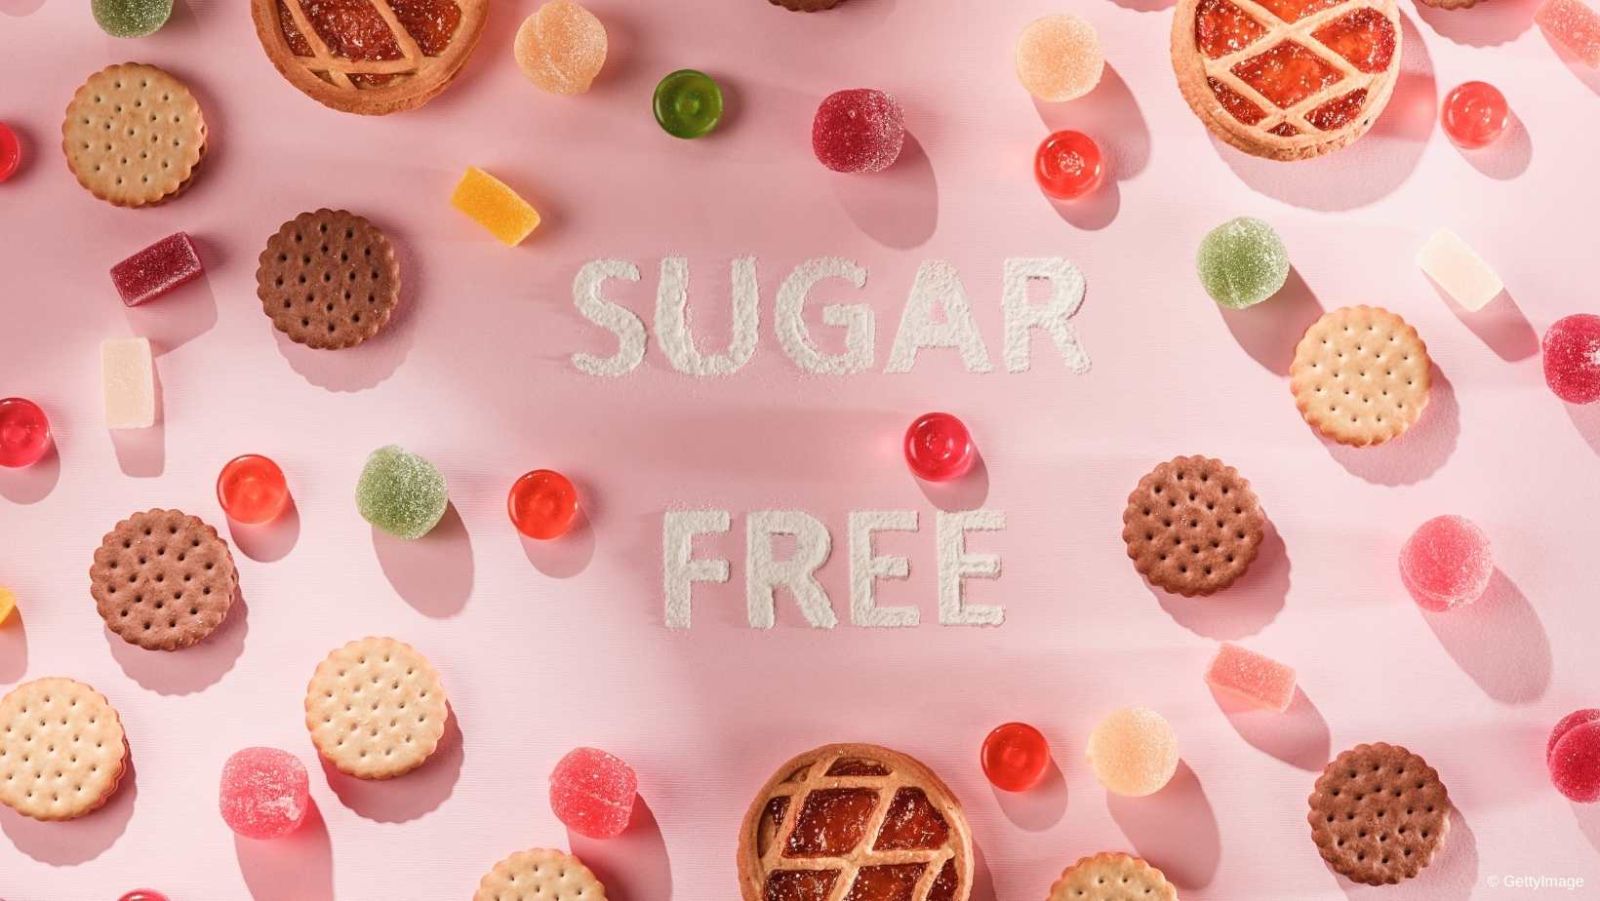 14 jours sans sucre : les incroyables effets sur votre santé et votre bien-être